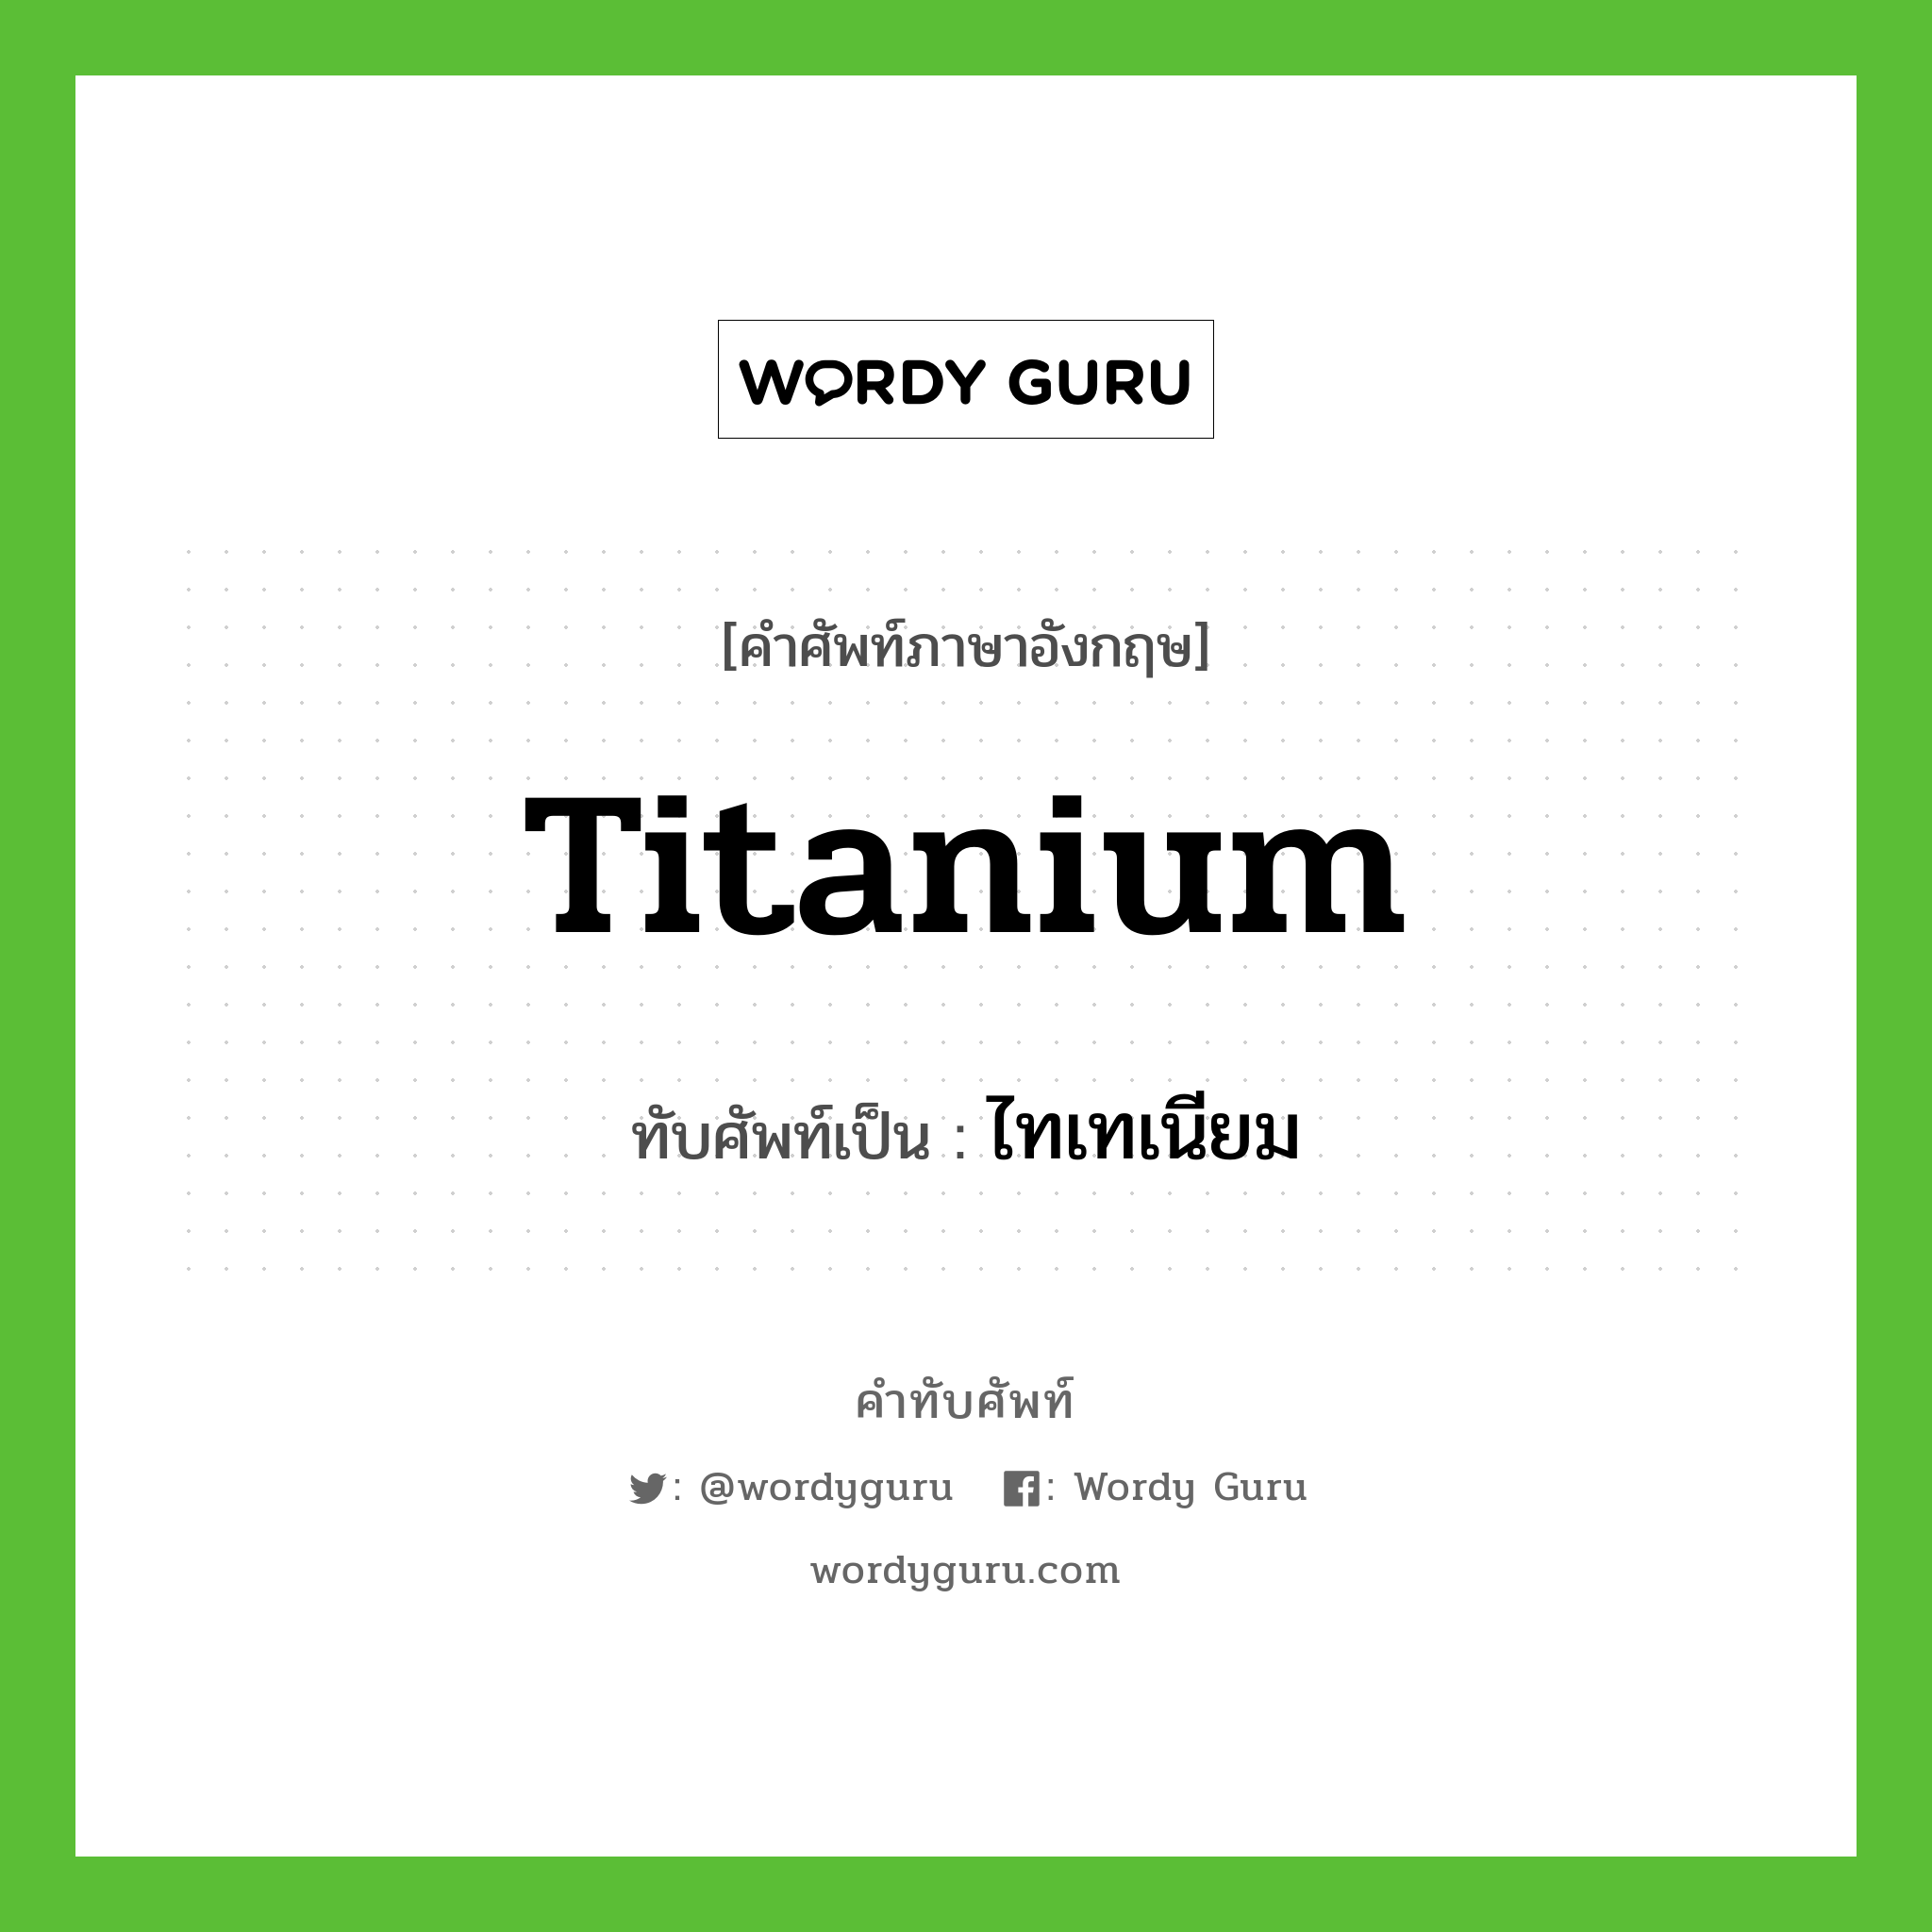 titanium เขียนเป็นคำไทยว่าอะไร?, คำศัพท์ภาษาอังกฤษ titanium ทับศัพท์เป็น ไทเทเนียม